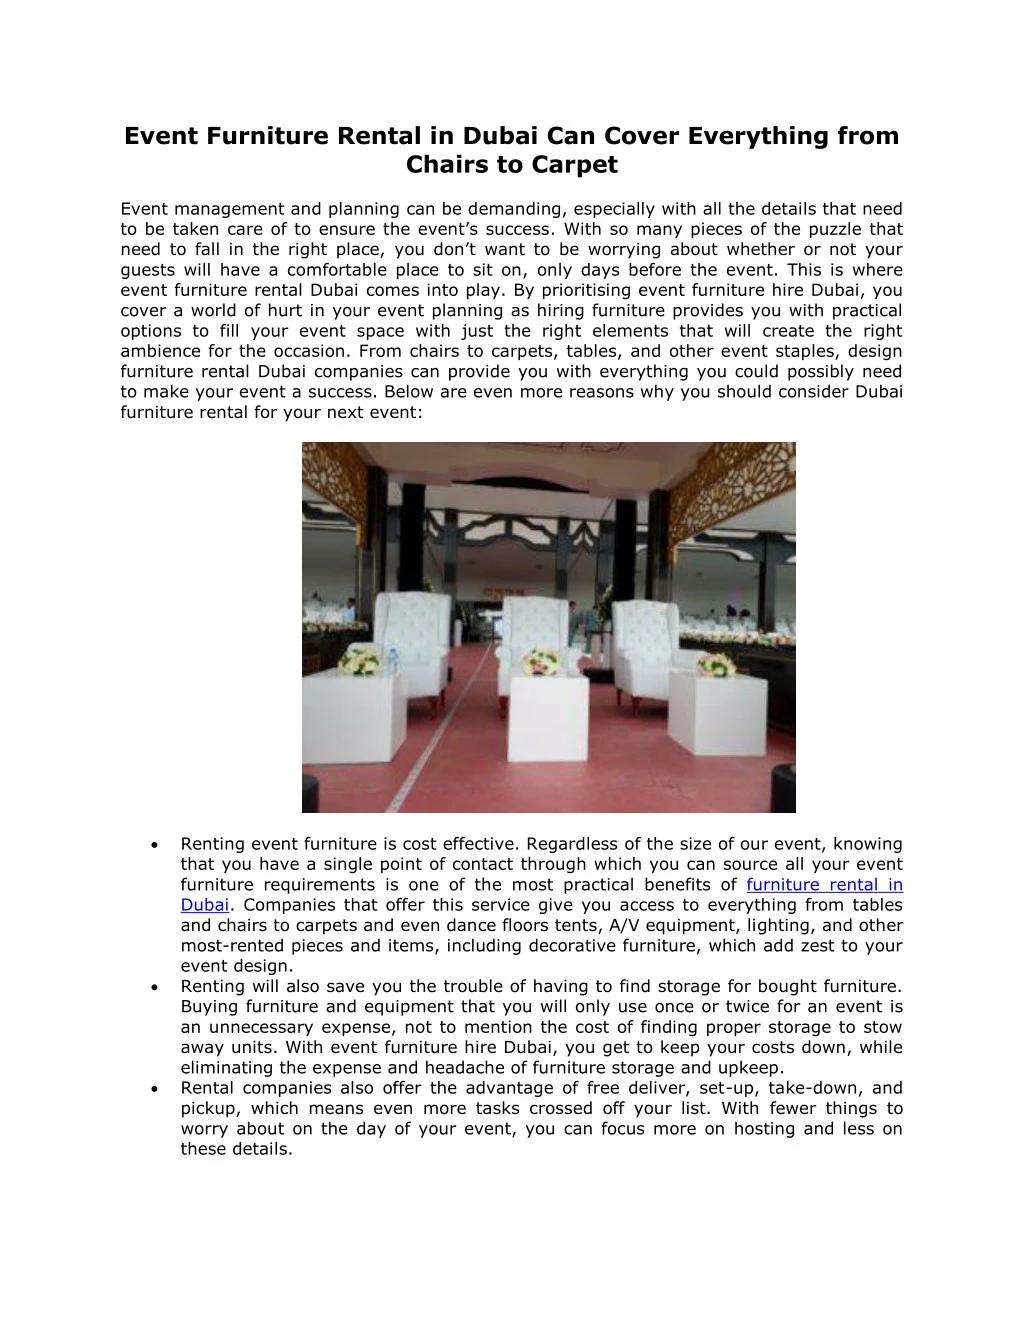 event furniture rental in dubai can cover